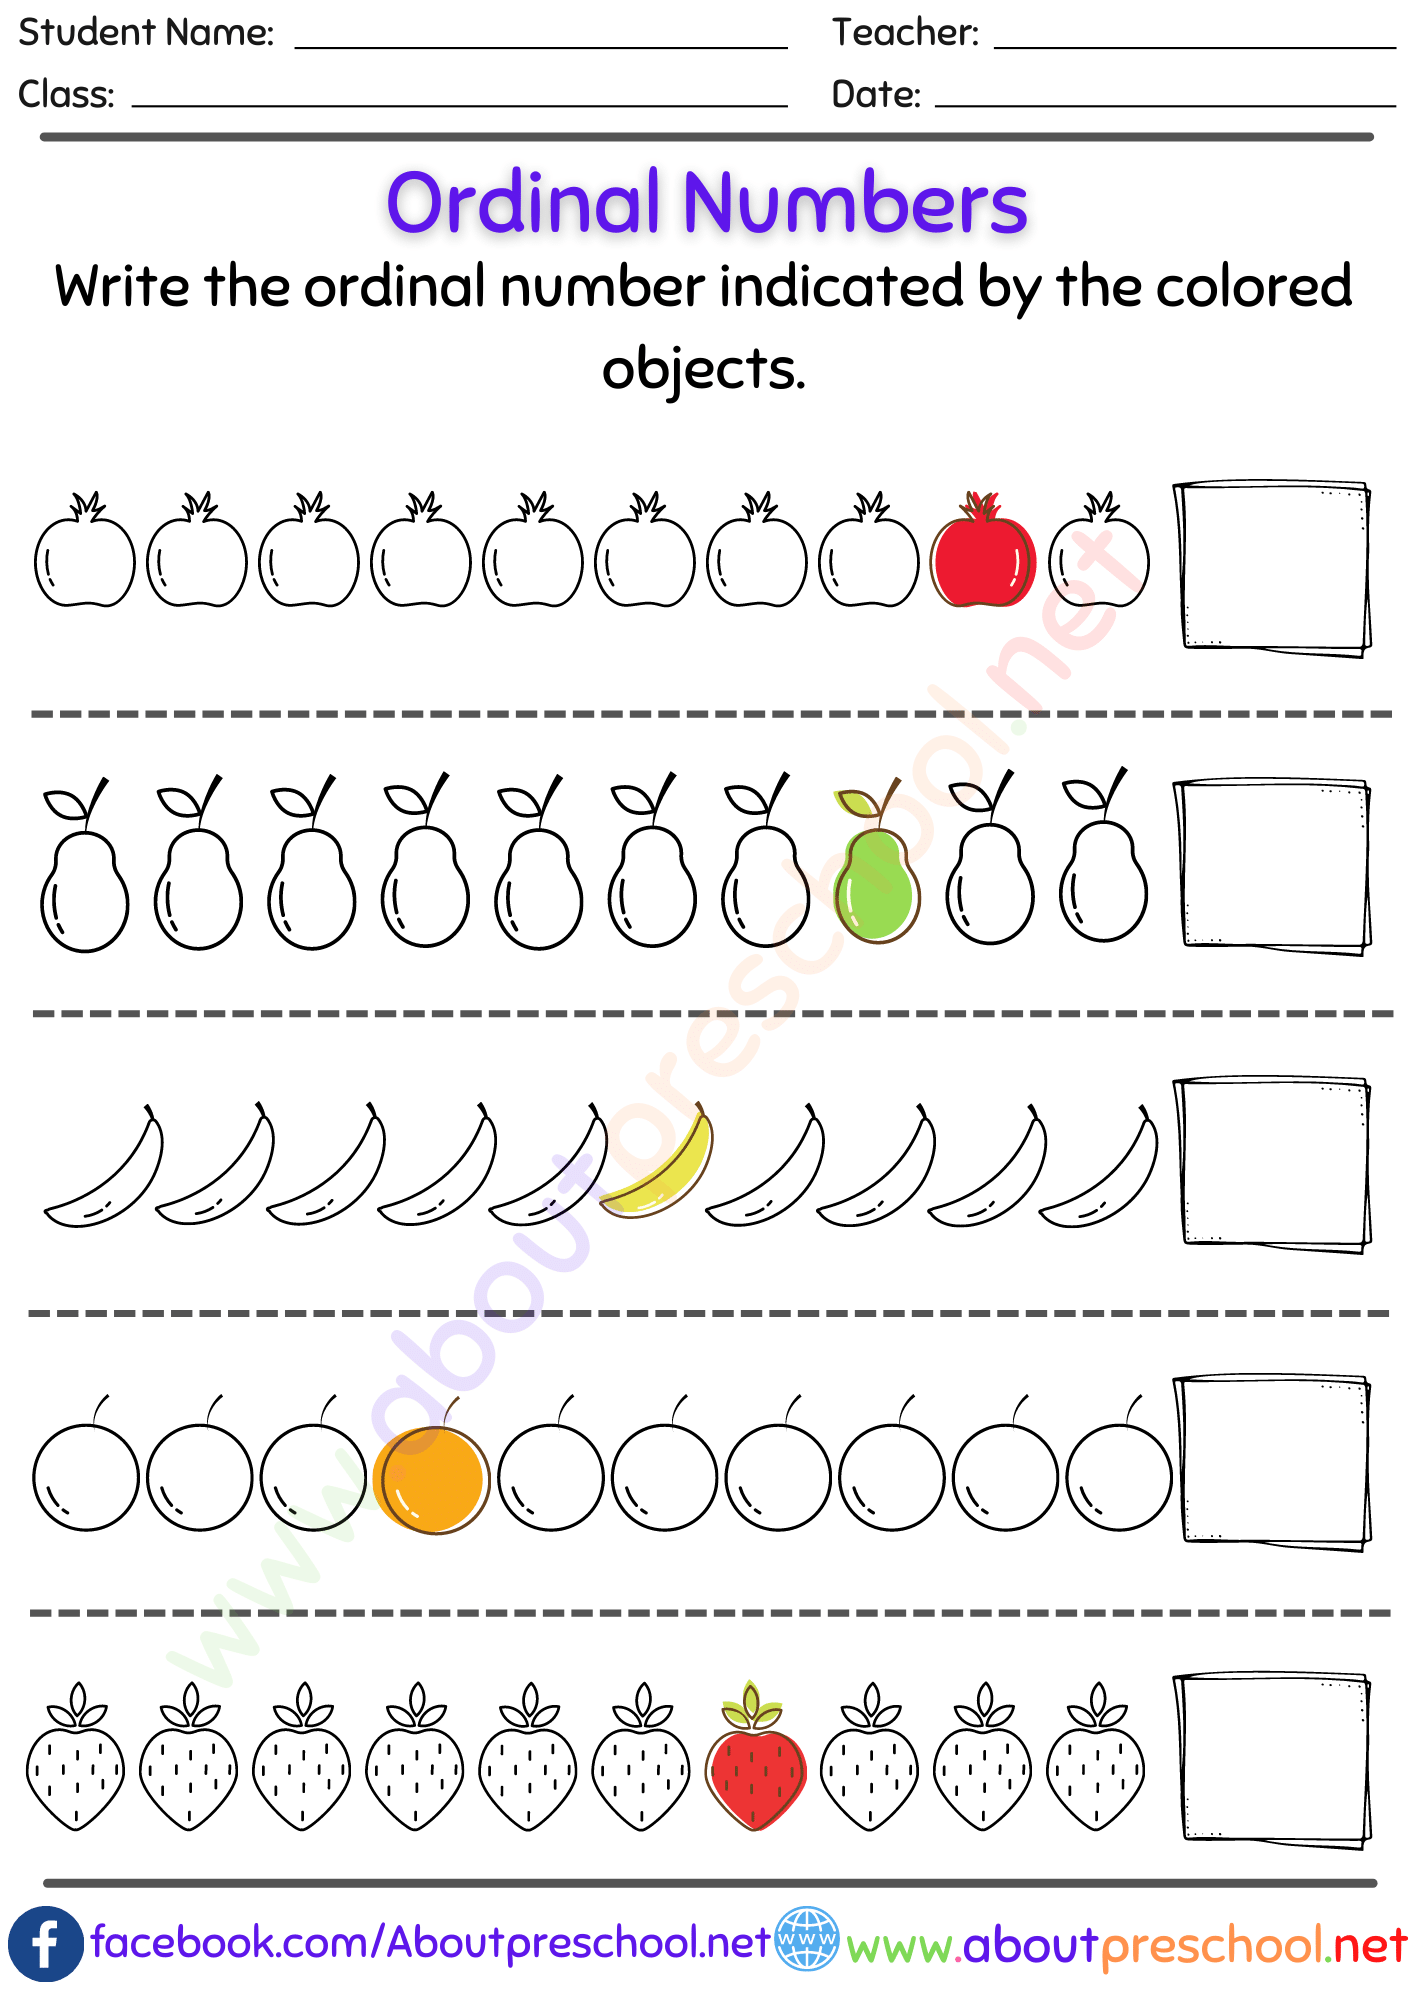 Kindergarten or Grade 1 Ordinal Numbers Worksheet 4